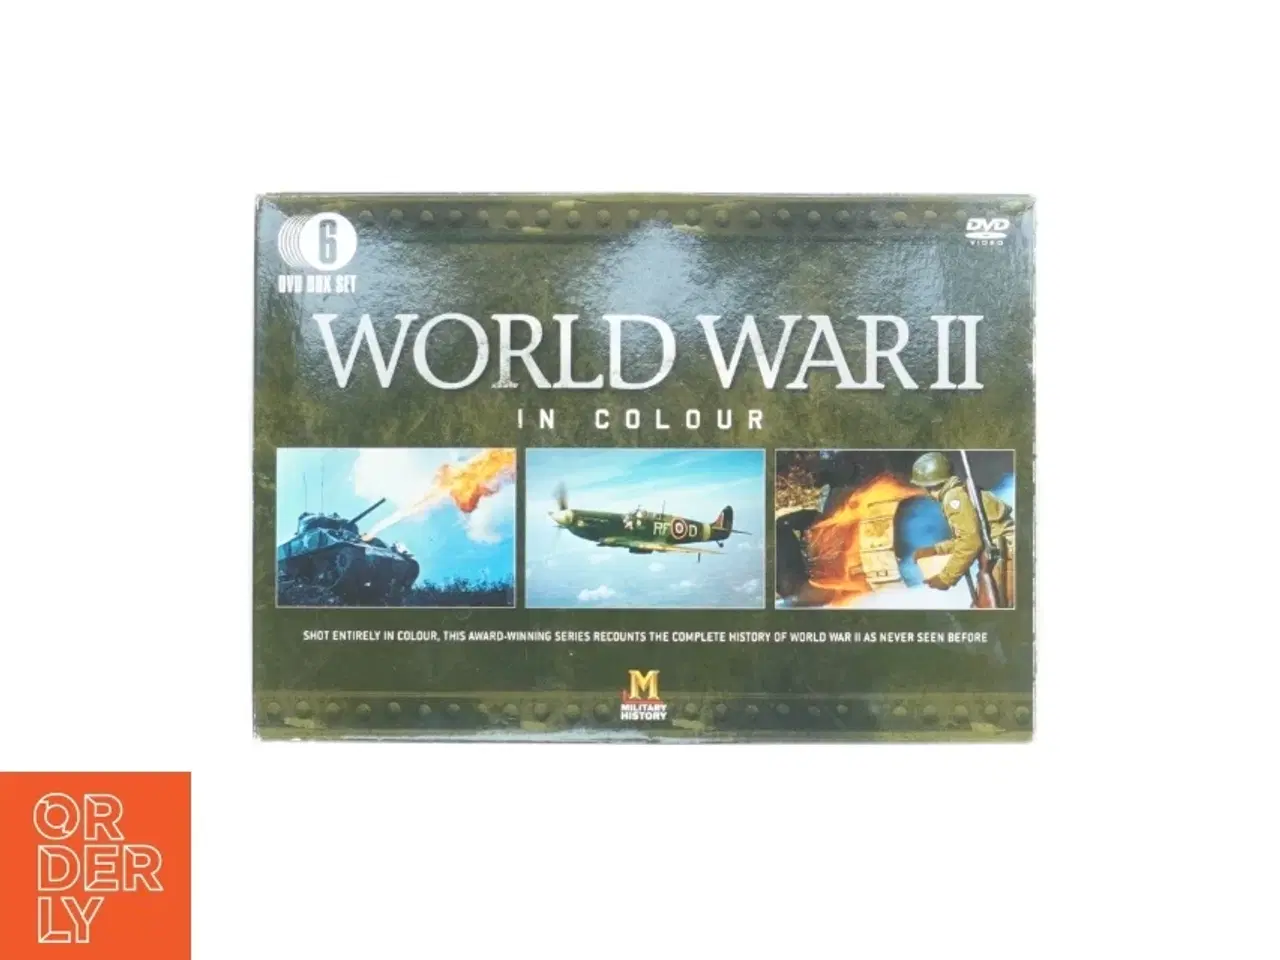 Billede 2 - Dvd sæt world war 2 in color fra Military History